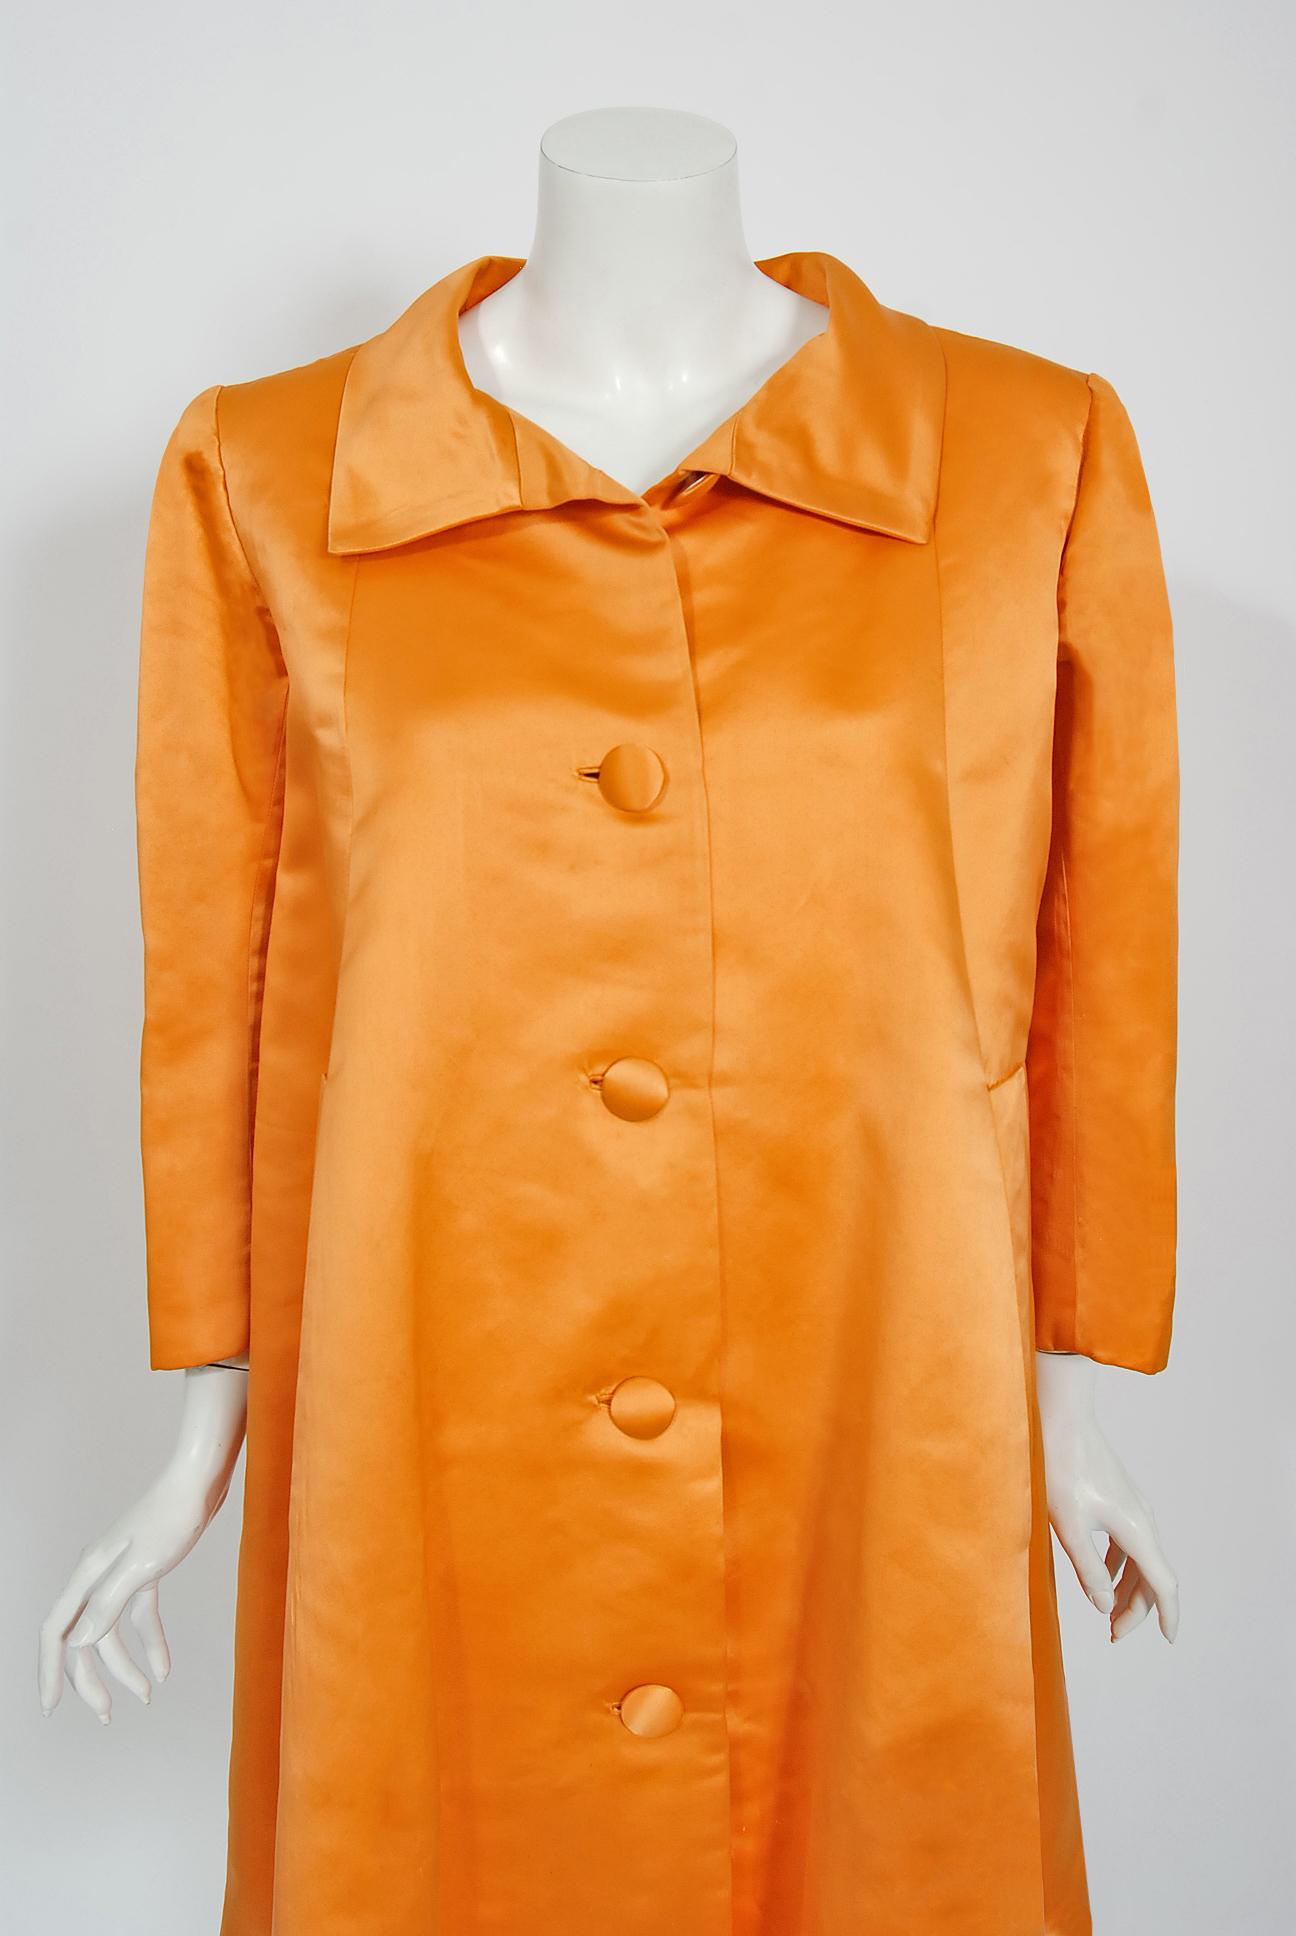 Superbe manteau swing haute couture Balenciaga en satin duchesse orange sunkist datant de sa collection de 1958. Cristobal Balenciaga a commencé à travailler dans le domaine de la mode à un très jeune âge. La légende veut que la Marquise de Casa